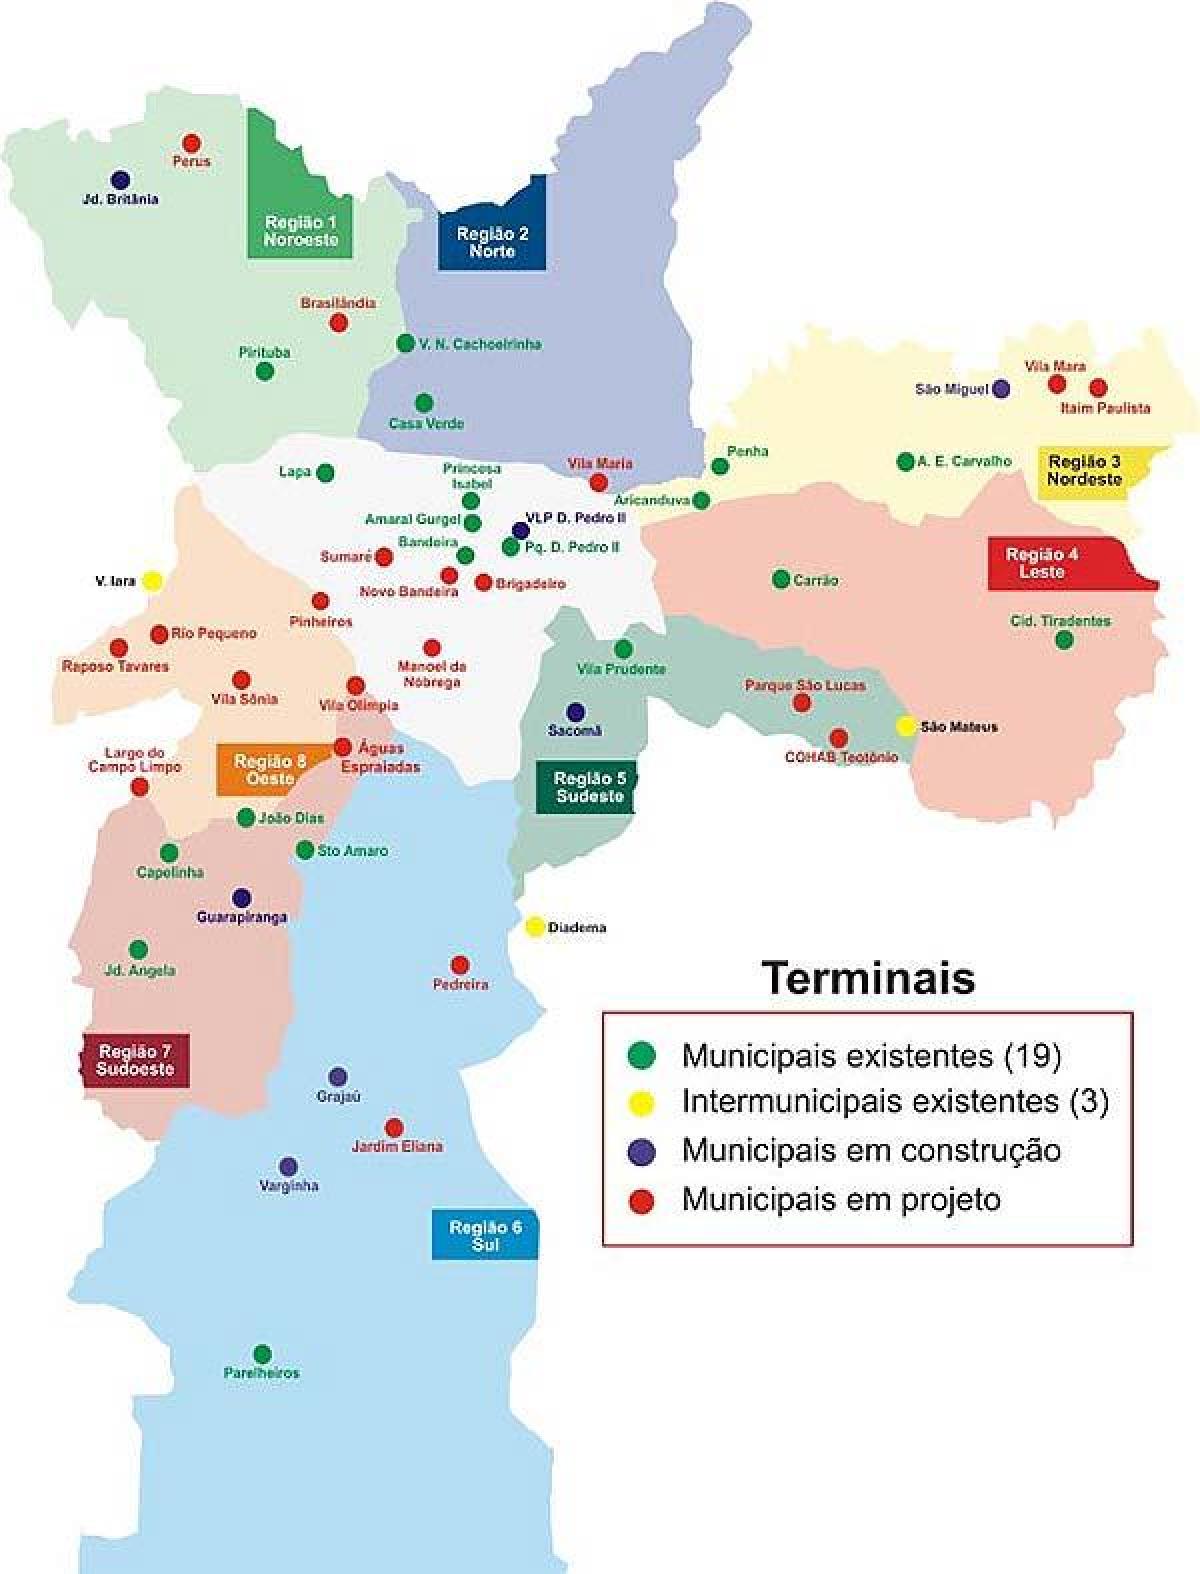 Карта терминали автобус Сао Пауло